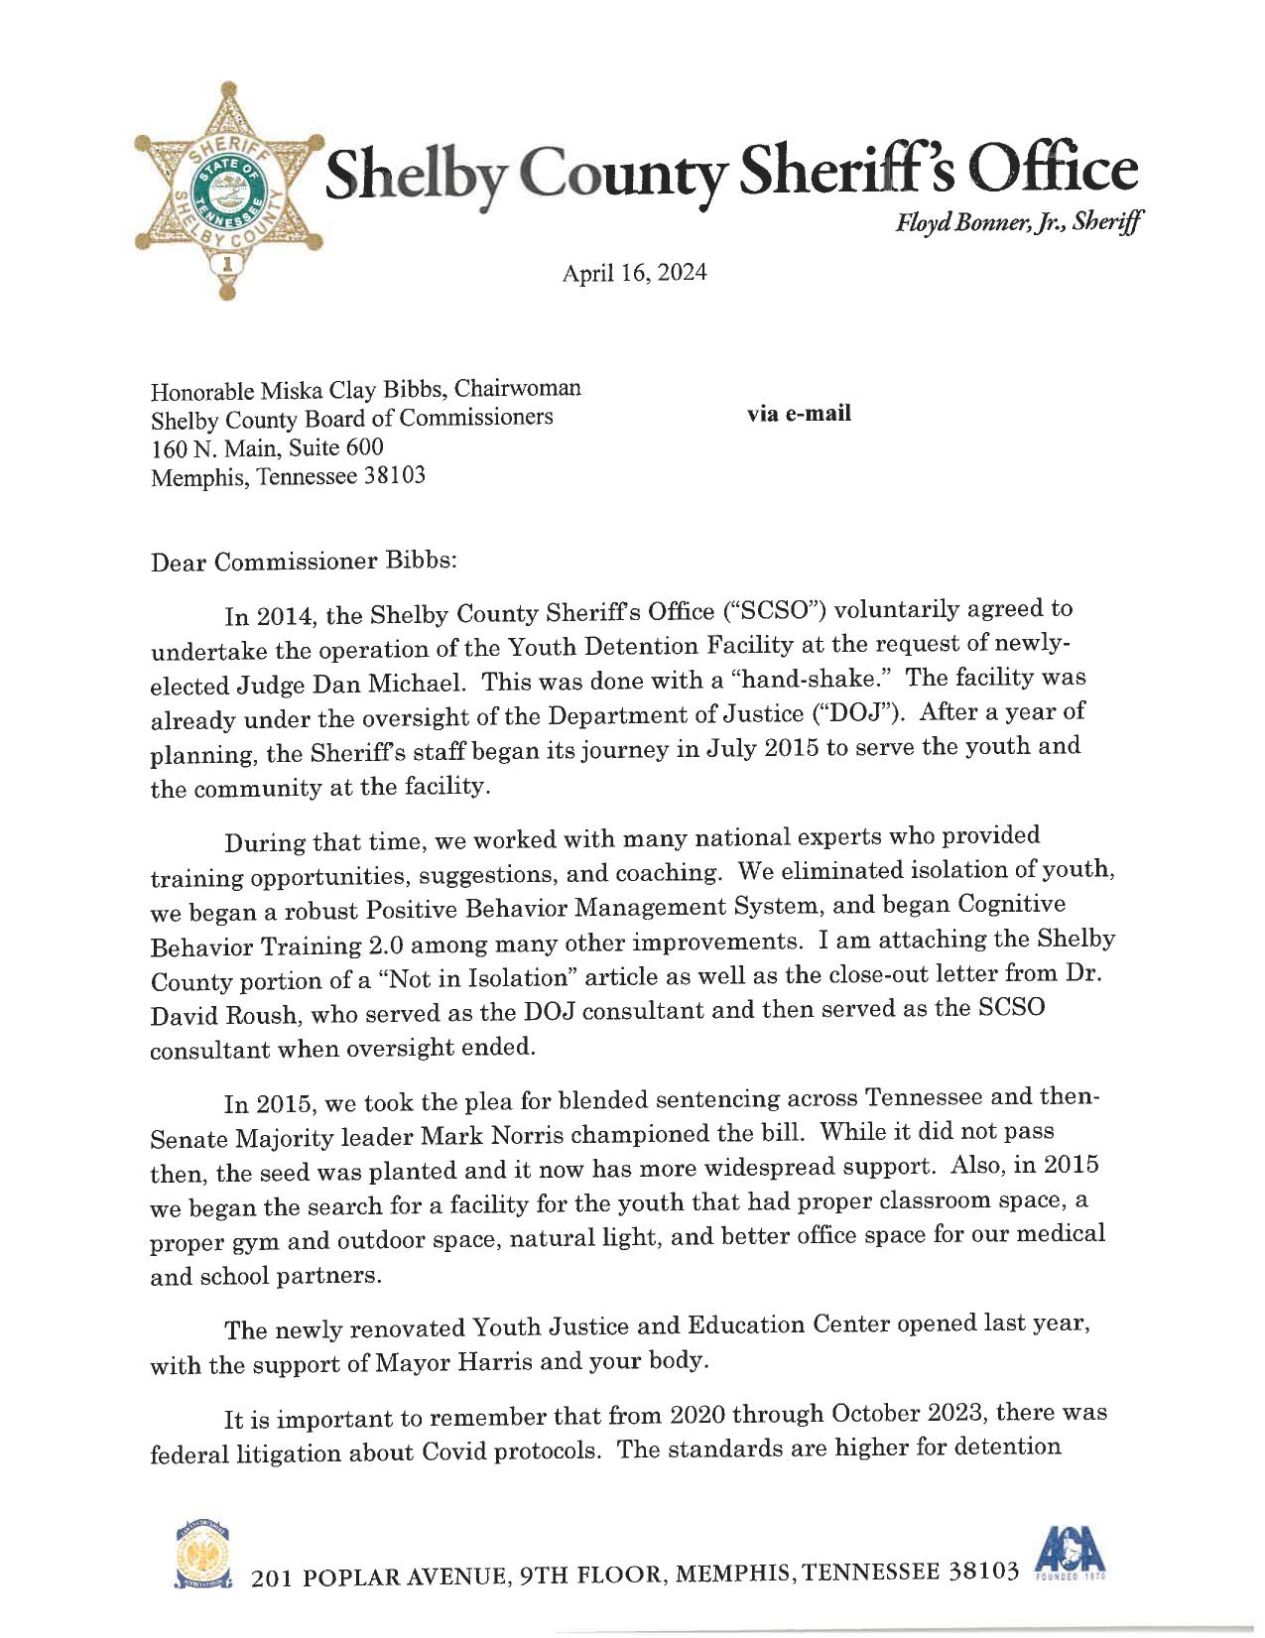 Shelby County Sheriff Floyd Bonner Letter